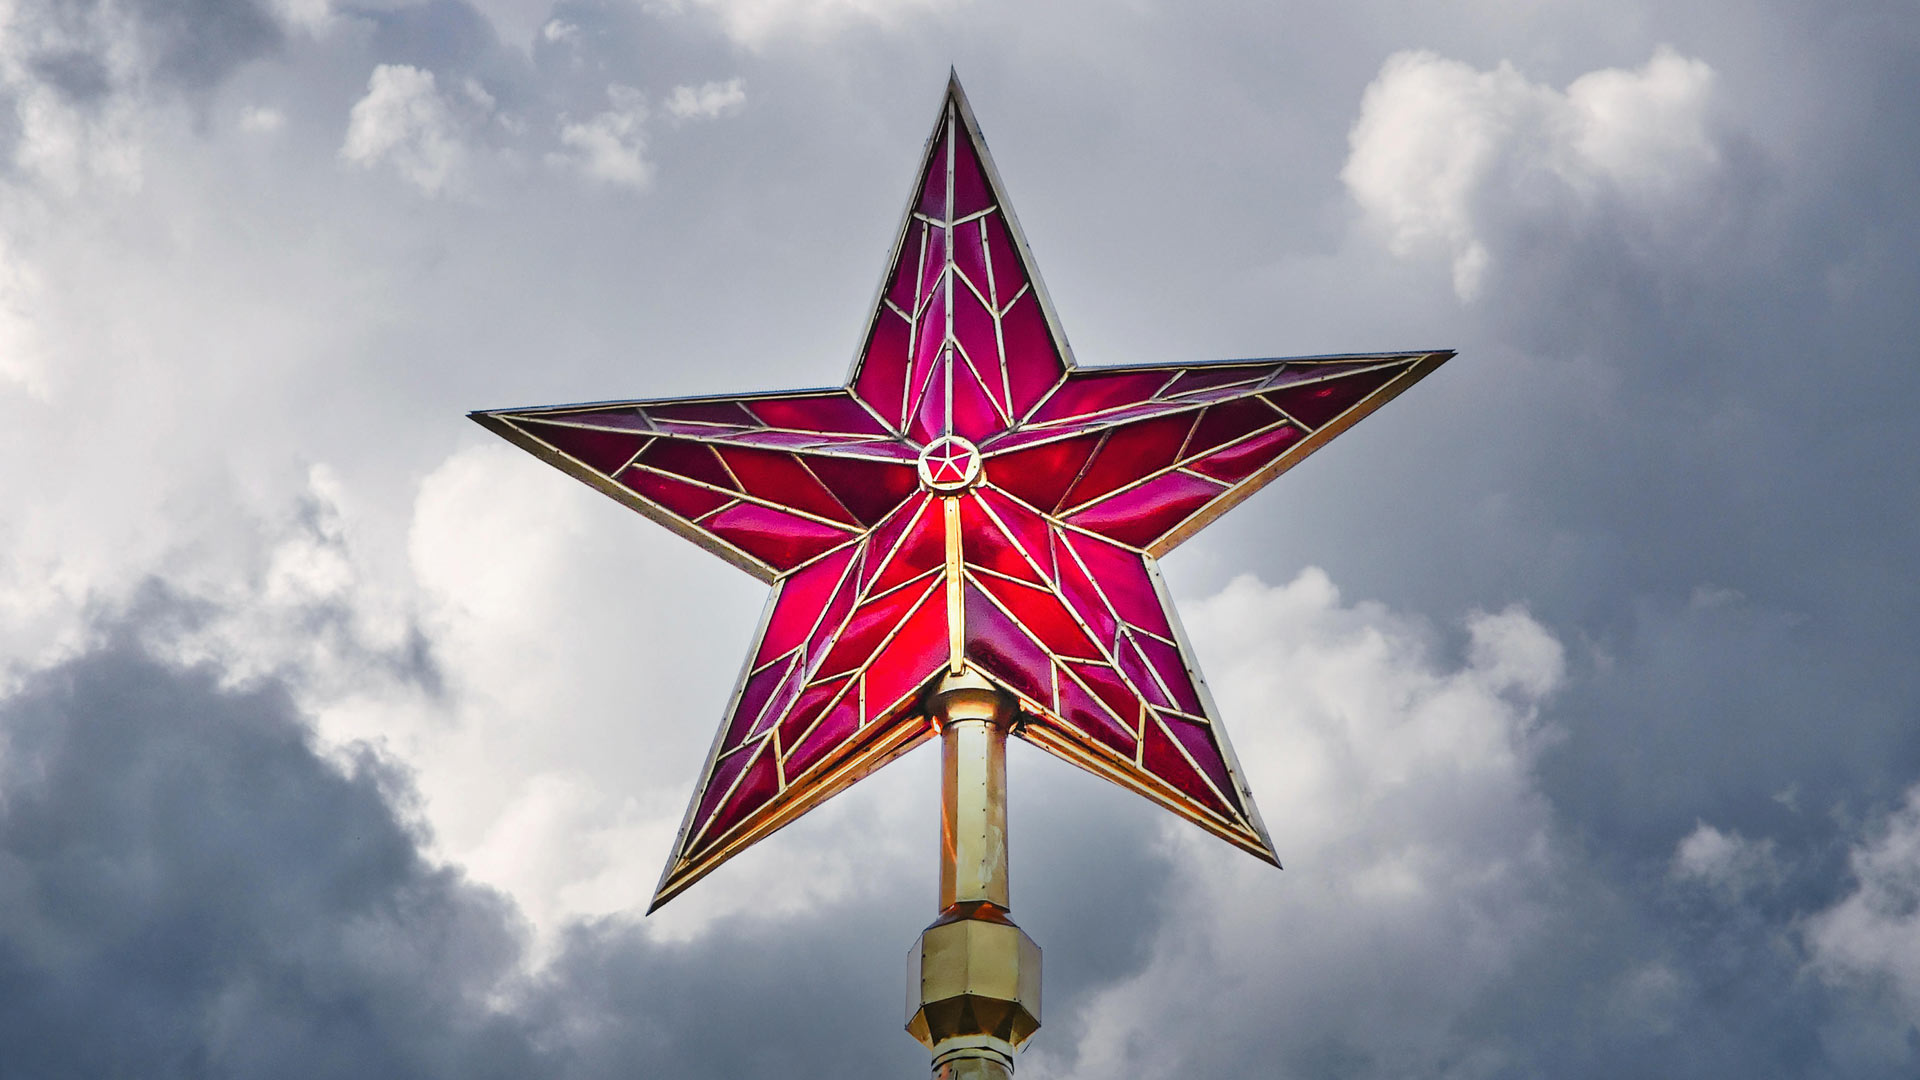 Roter Stern auf dem Kreml | picture alliance / Zoonar